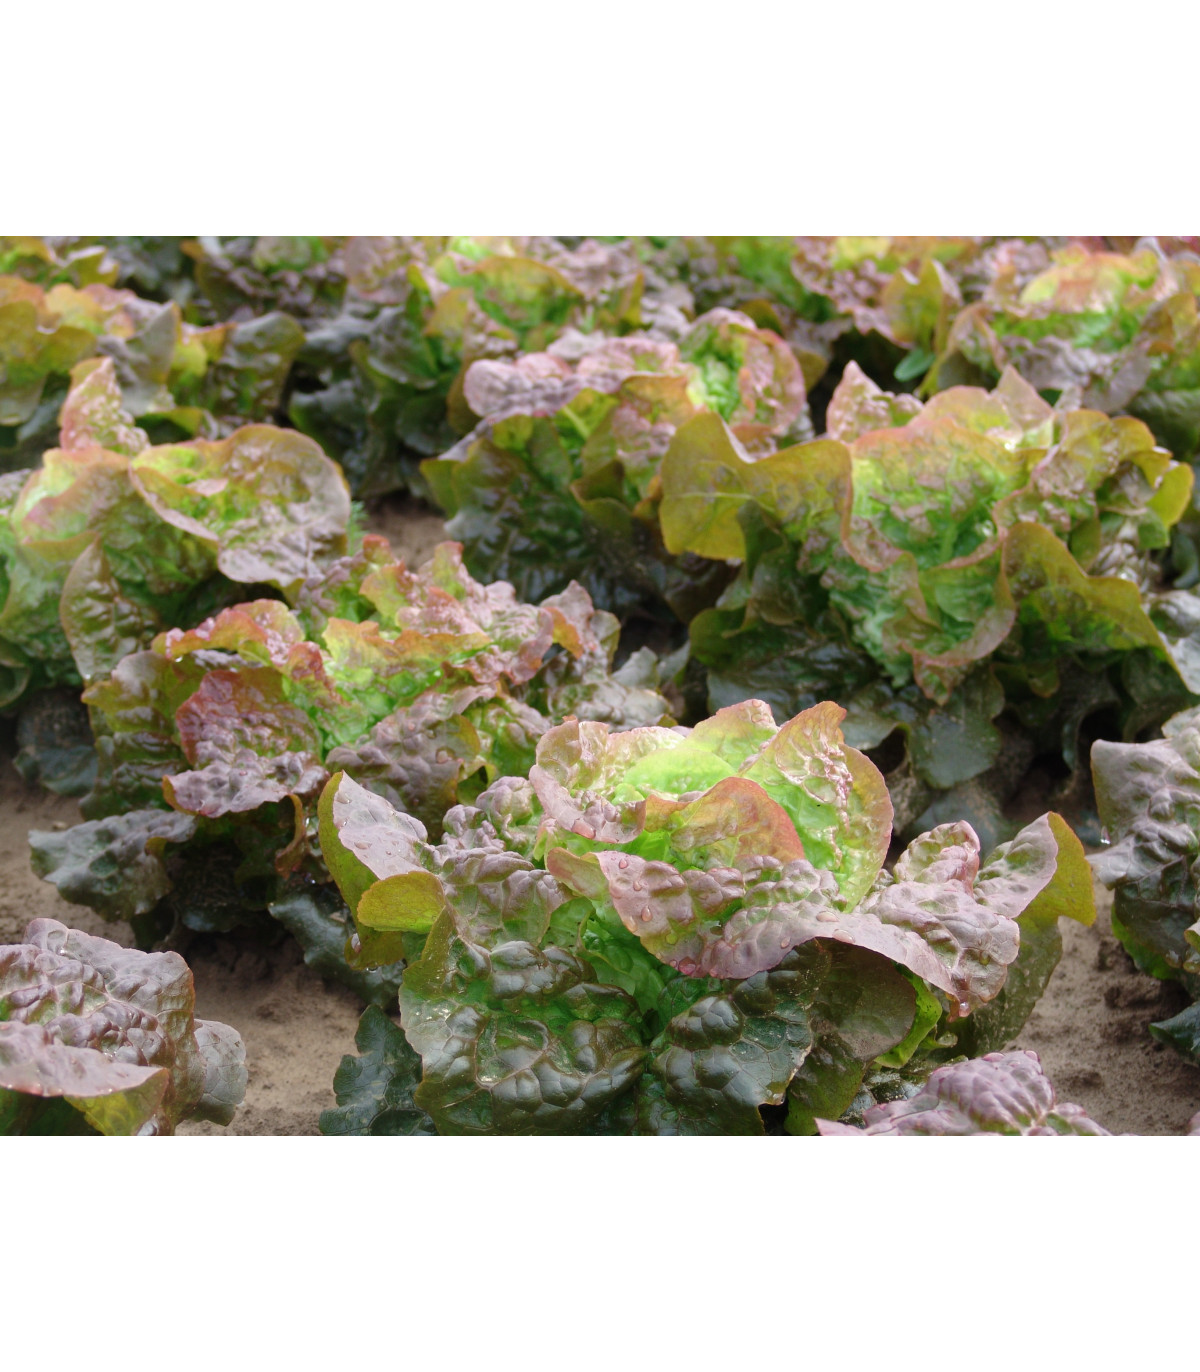 Salát hlávkový červený Rosemarry - Lactuca sativa - osivo salátu - 200 ks